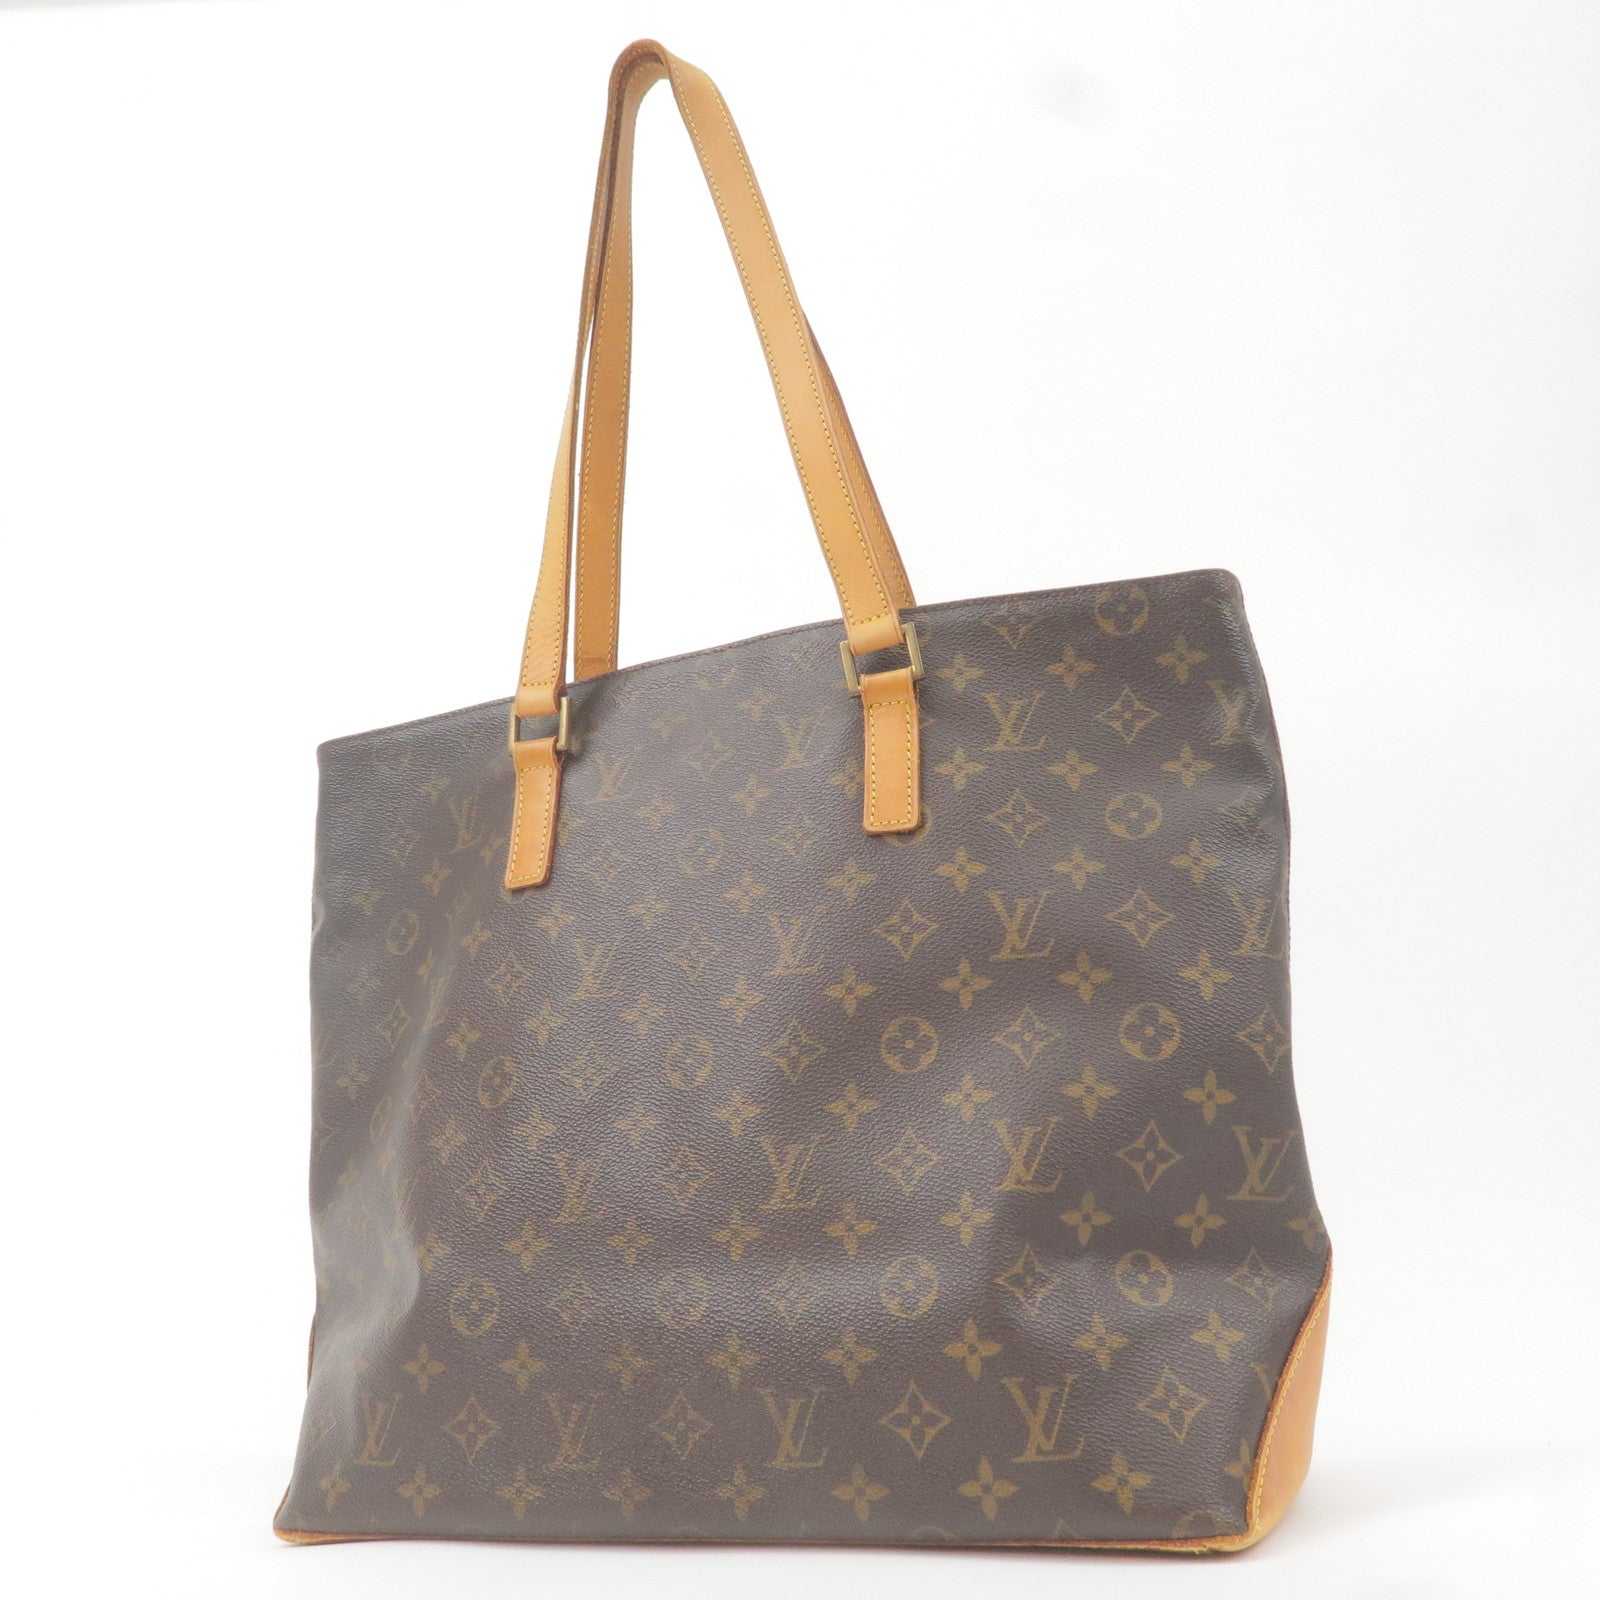 Authentic Louis Vuitton Cabas Mezzo Bag